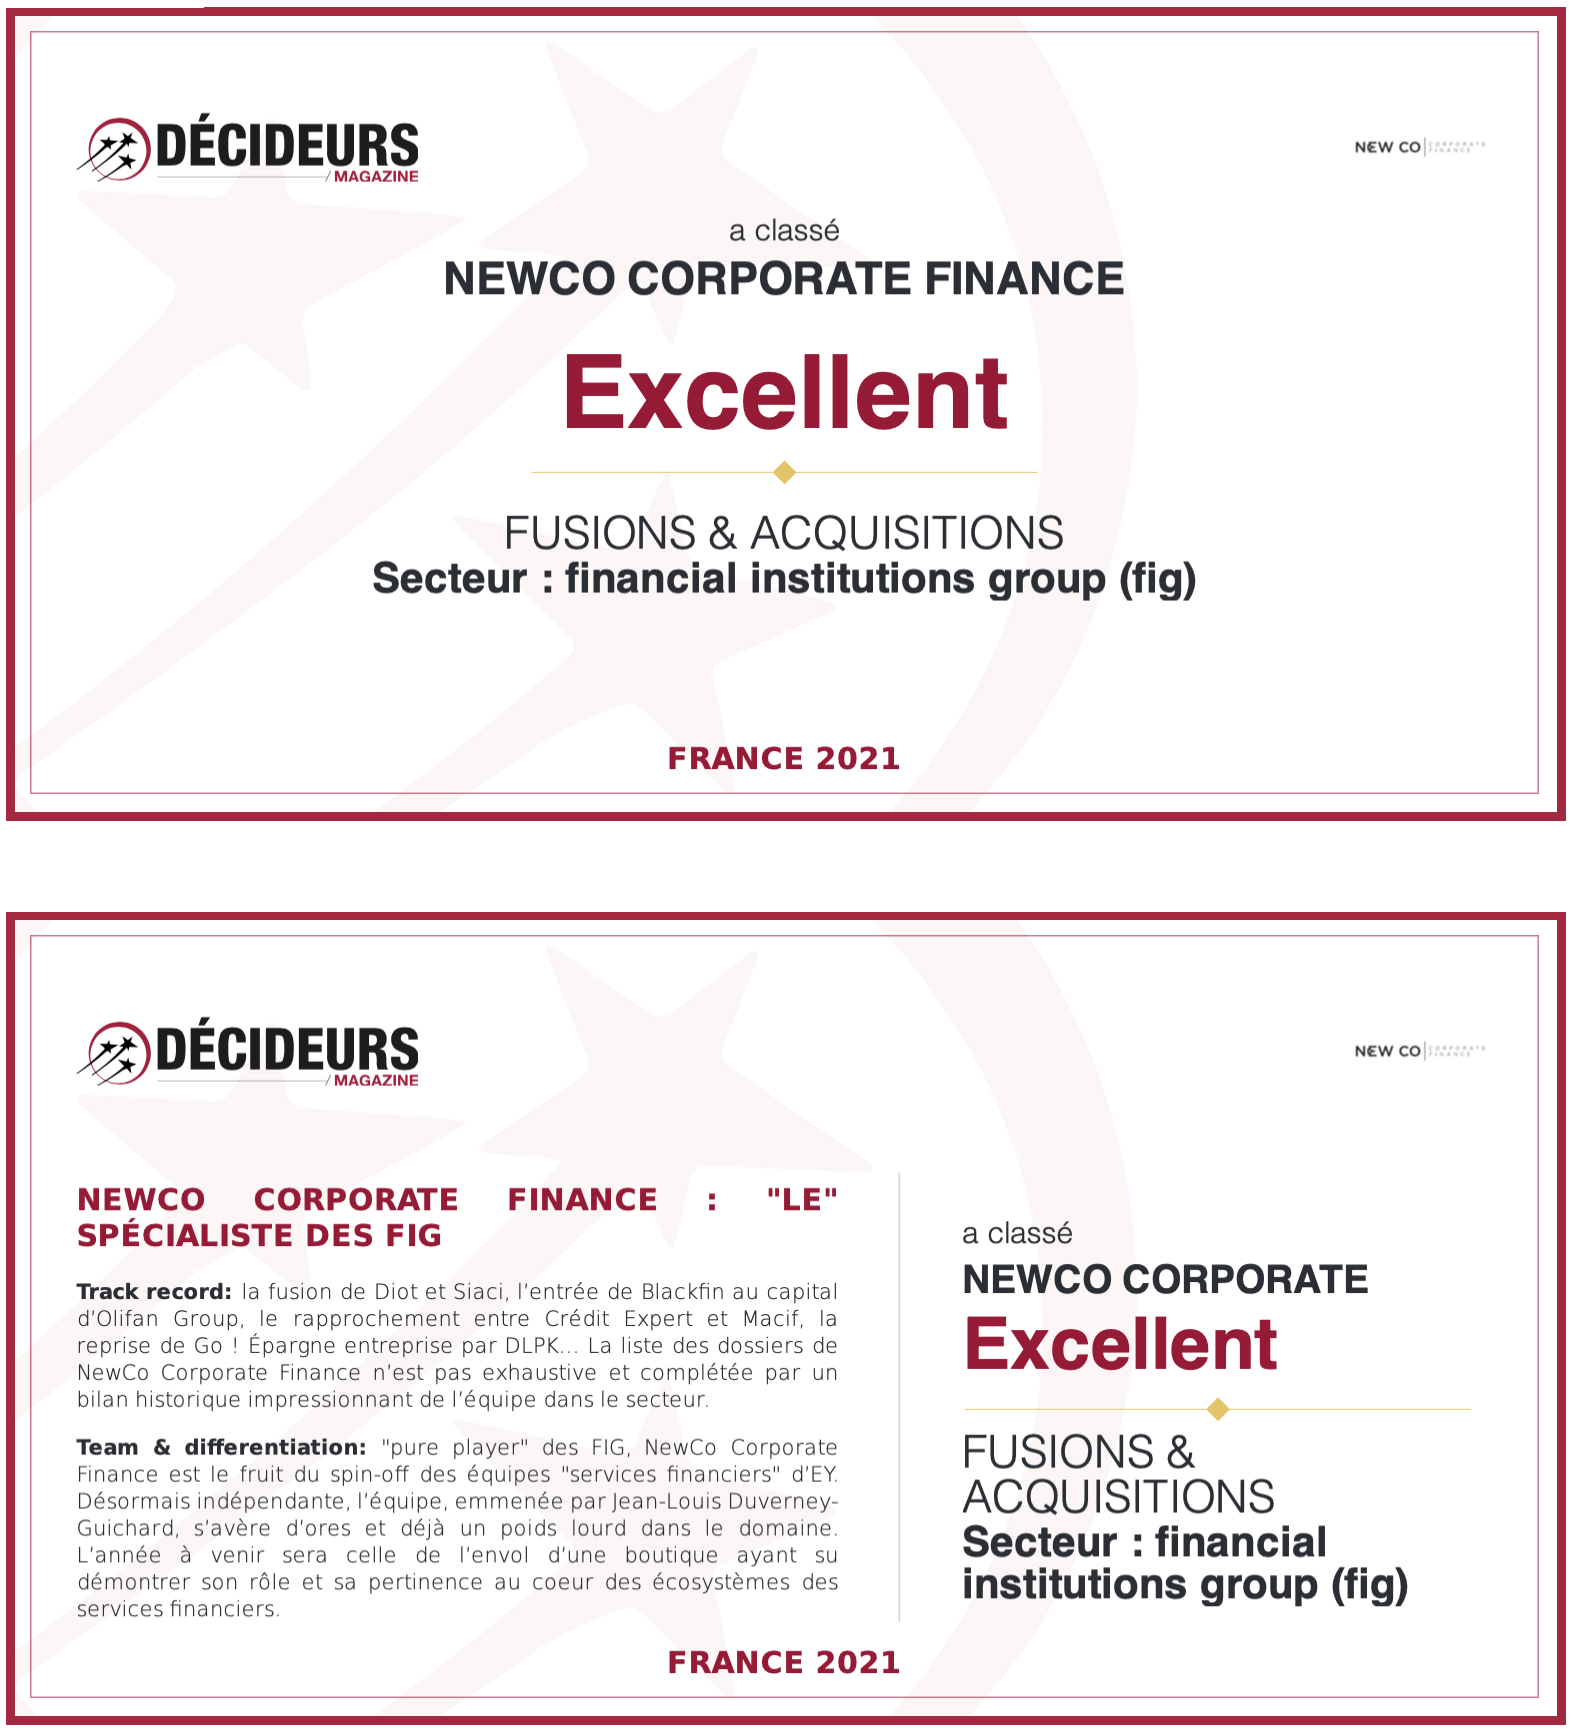 Pour sa première année d’existence, NewCo Corporate Finance intègre le classement Leaders League dans la catégorie Excellent